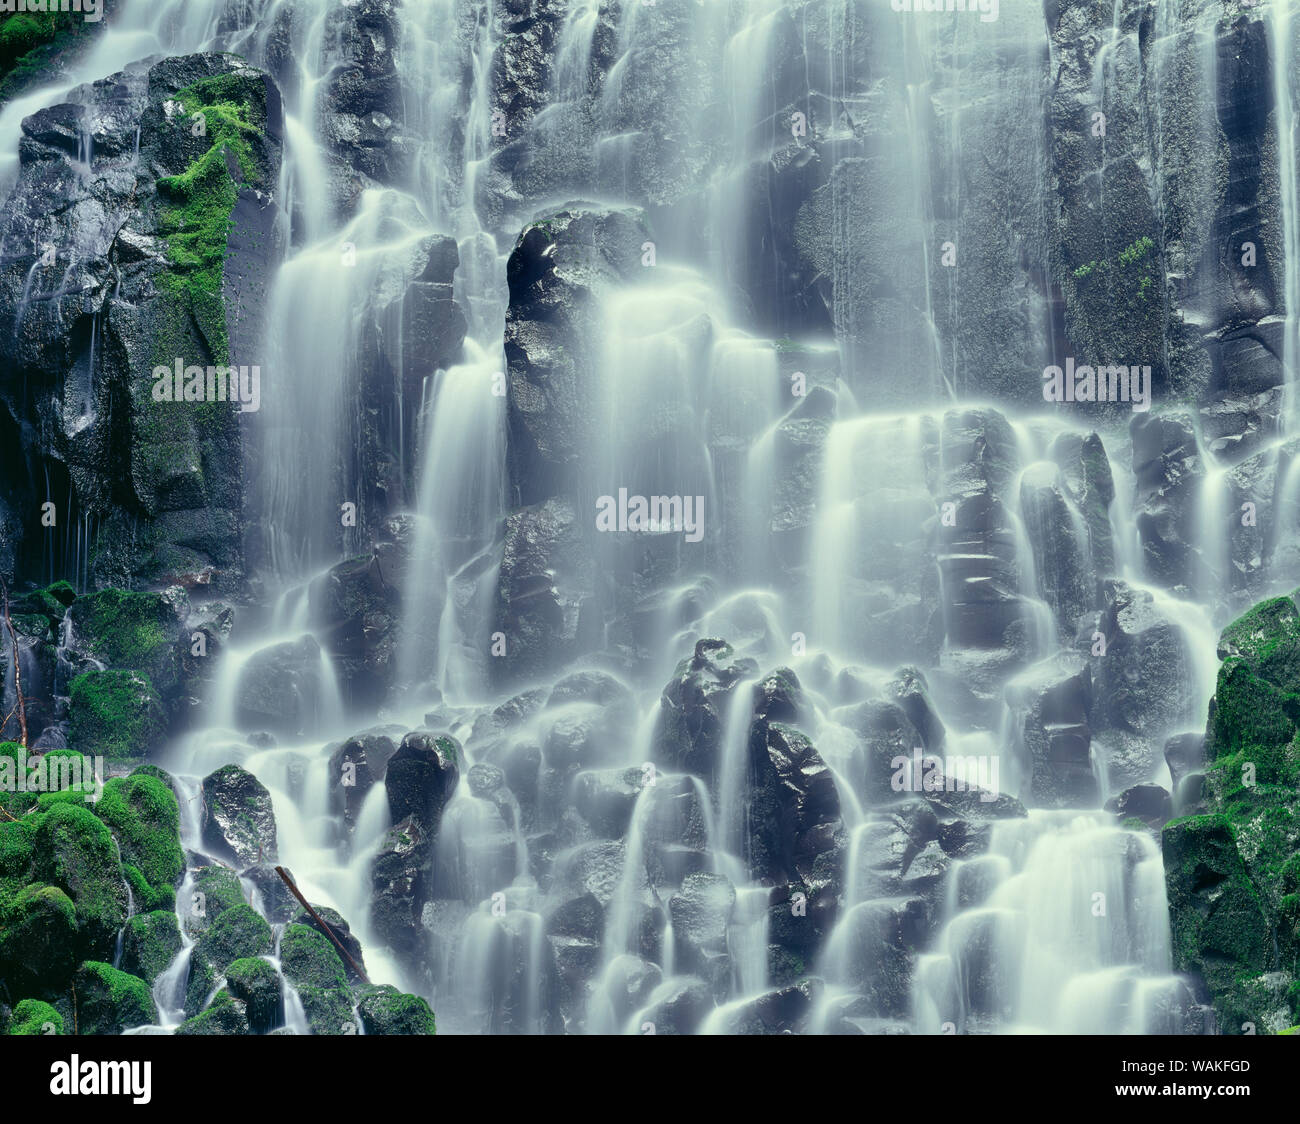 USA (Oregon). Mount Hood National Forest, Mount Hood Wilderness, Ramona Falls est formé par un petit ruisseau Tumbling sur une falaise de basalte columnaire moussus. Banque D'Images